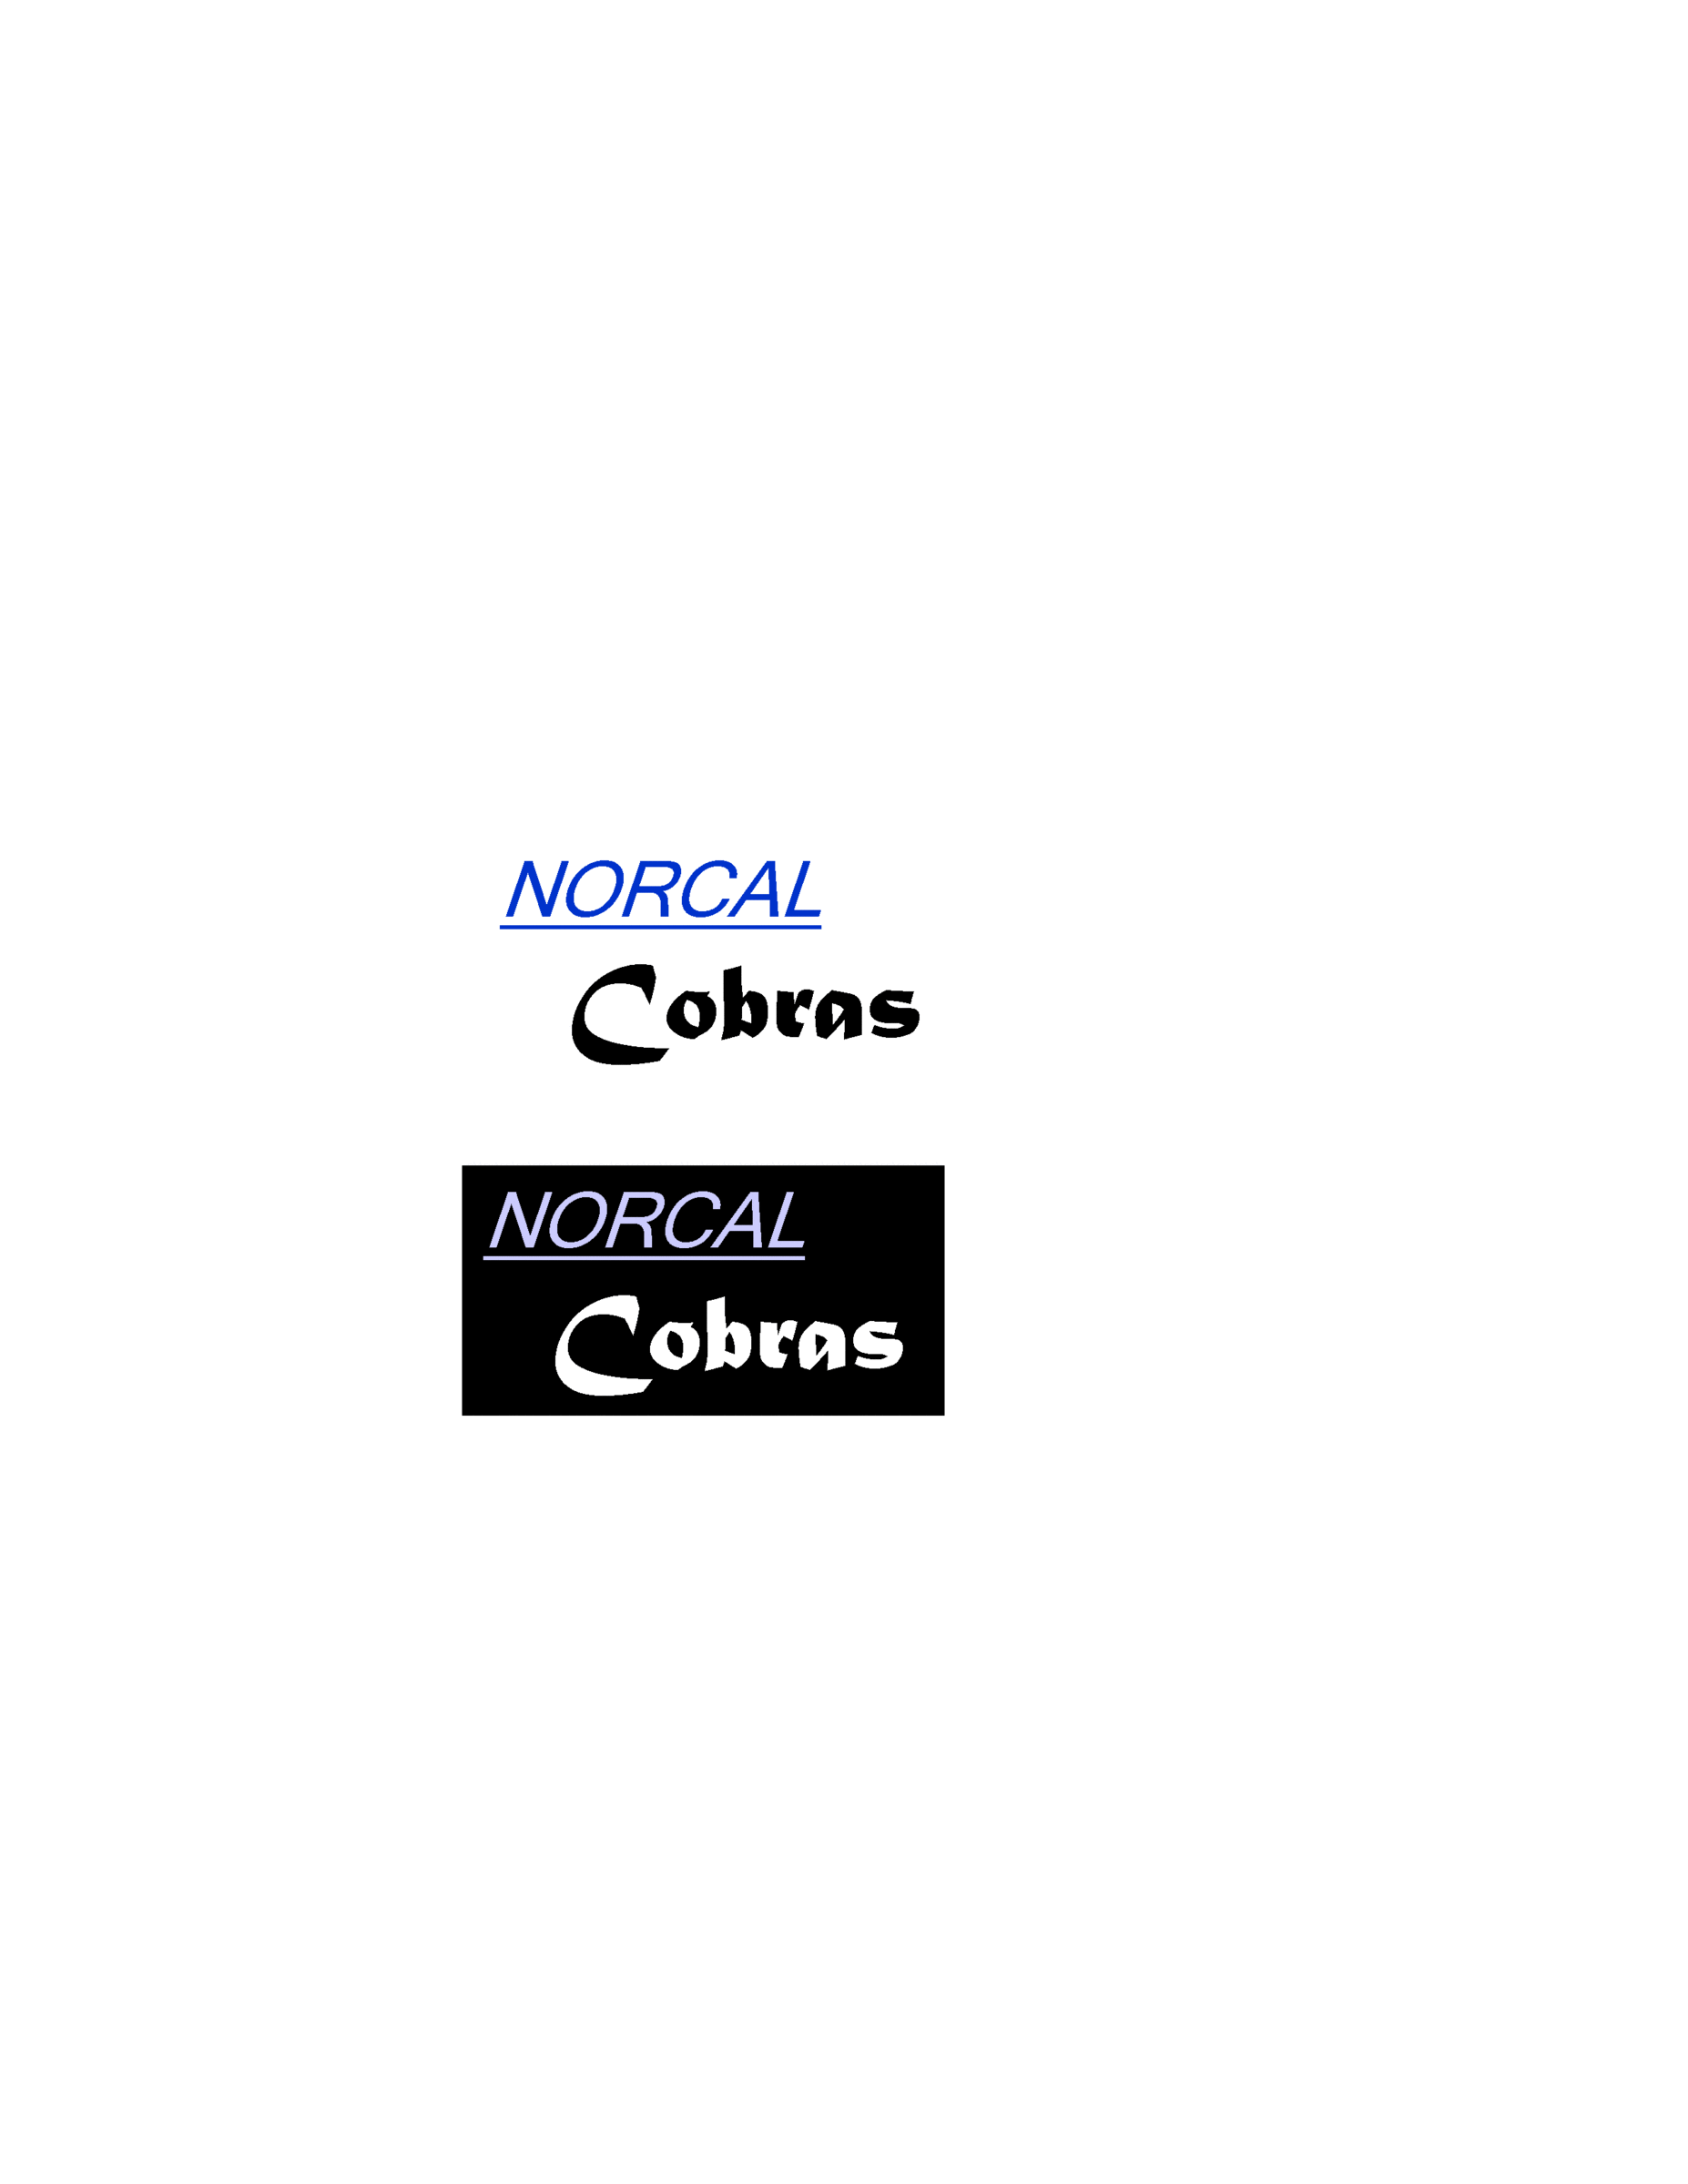 NORCAL_Logos